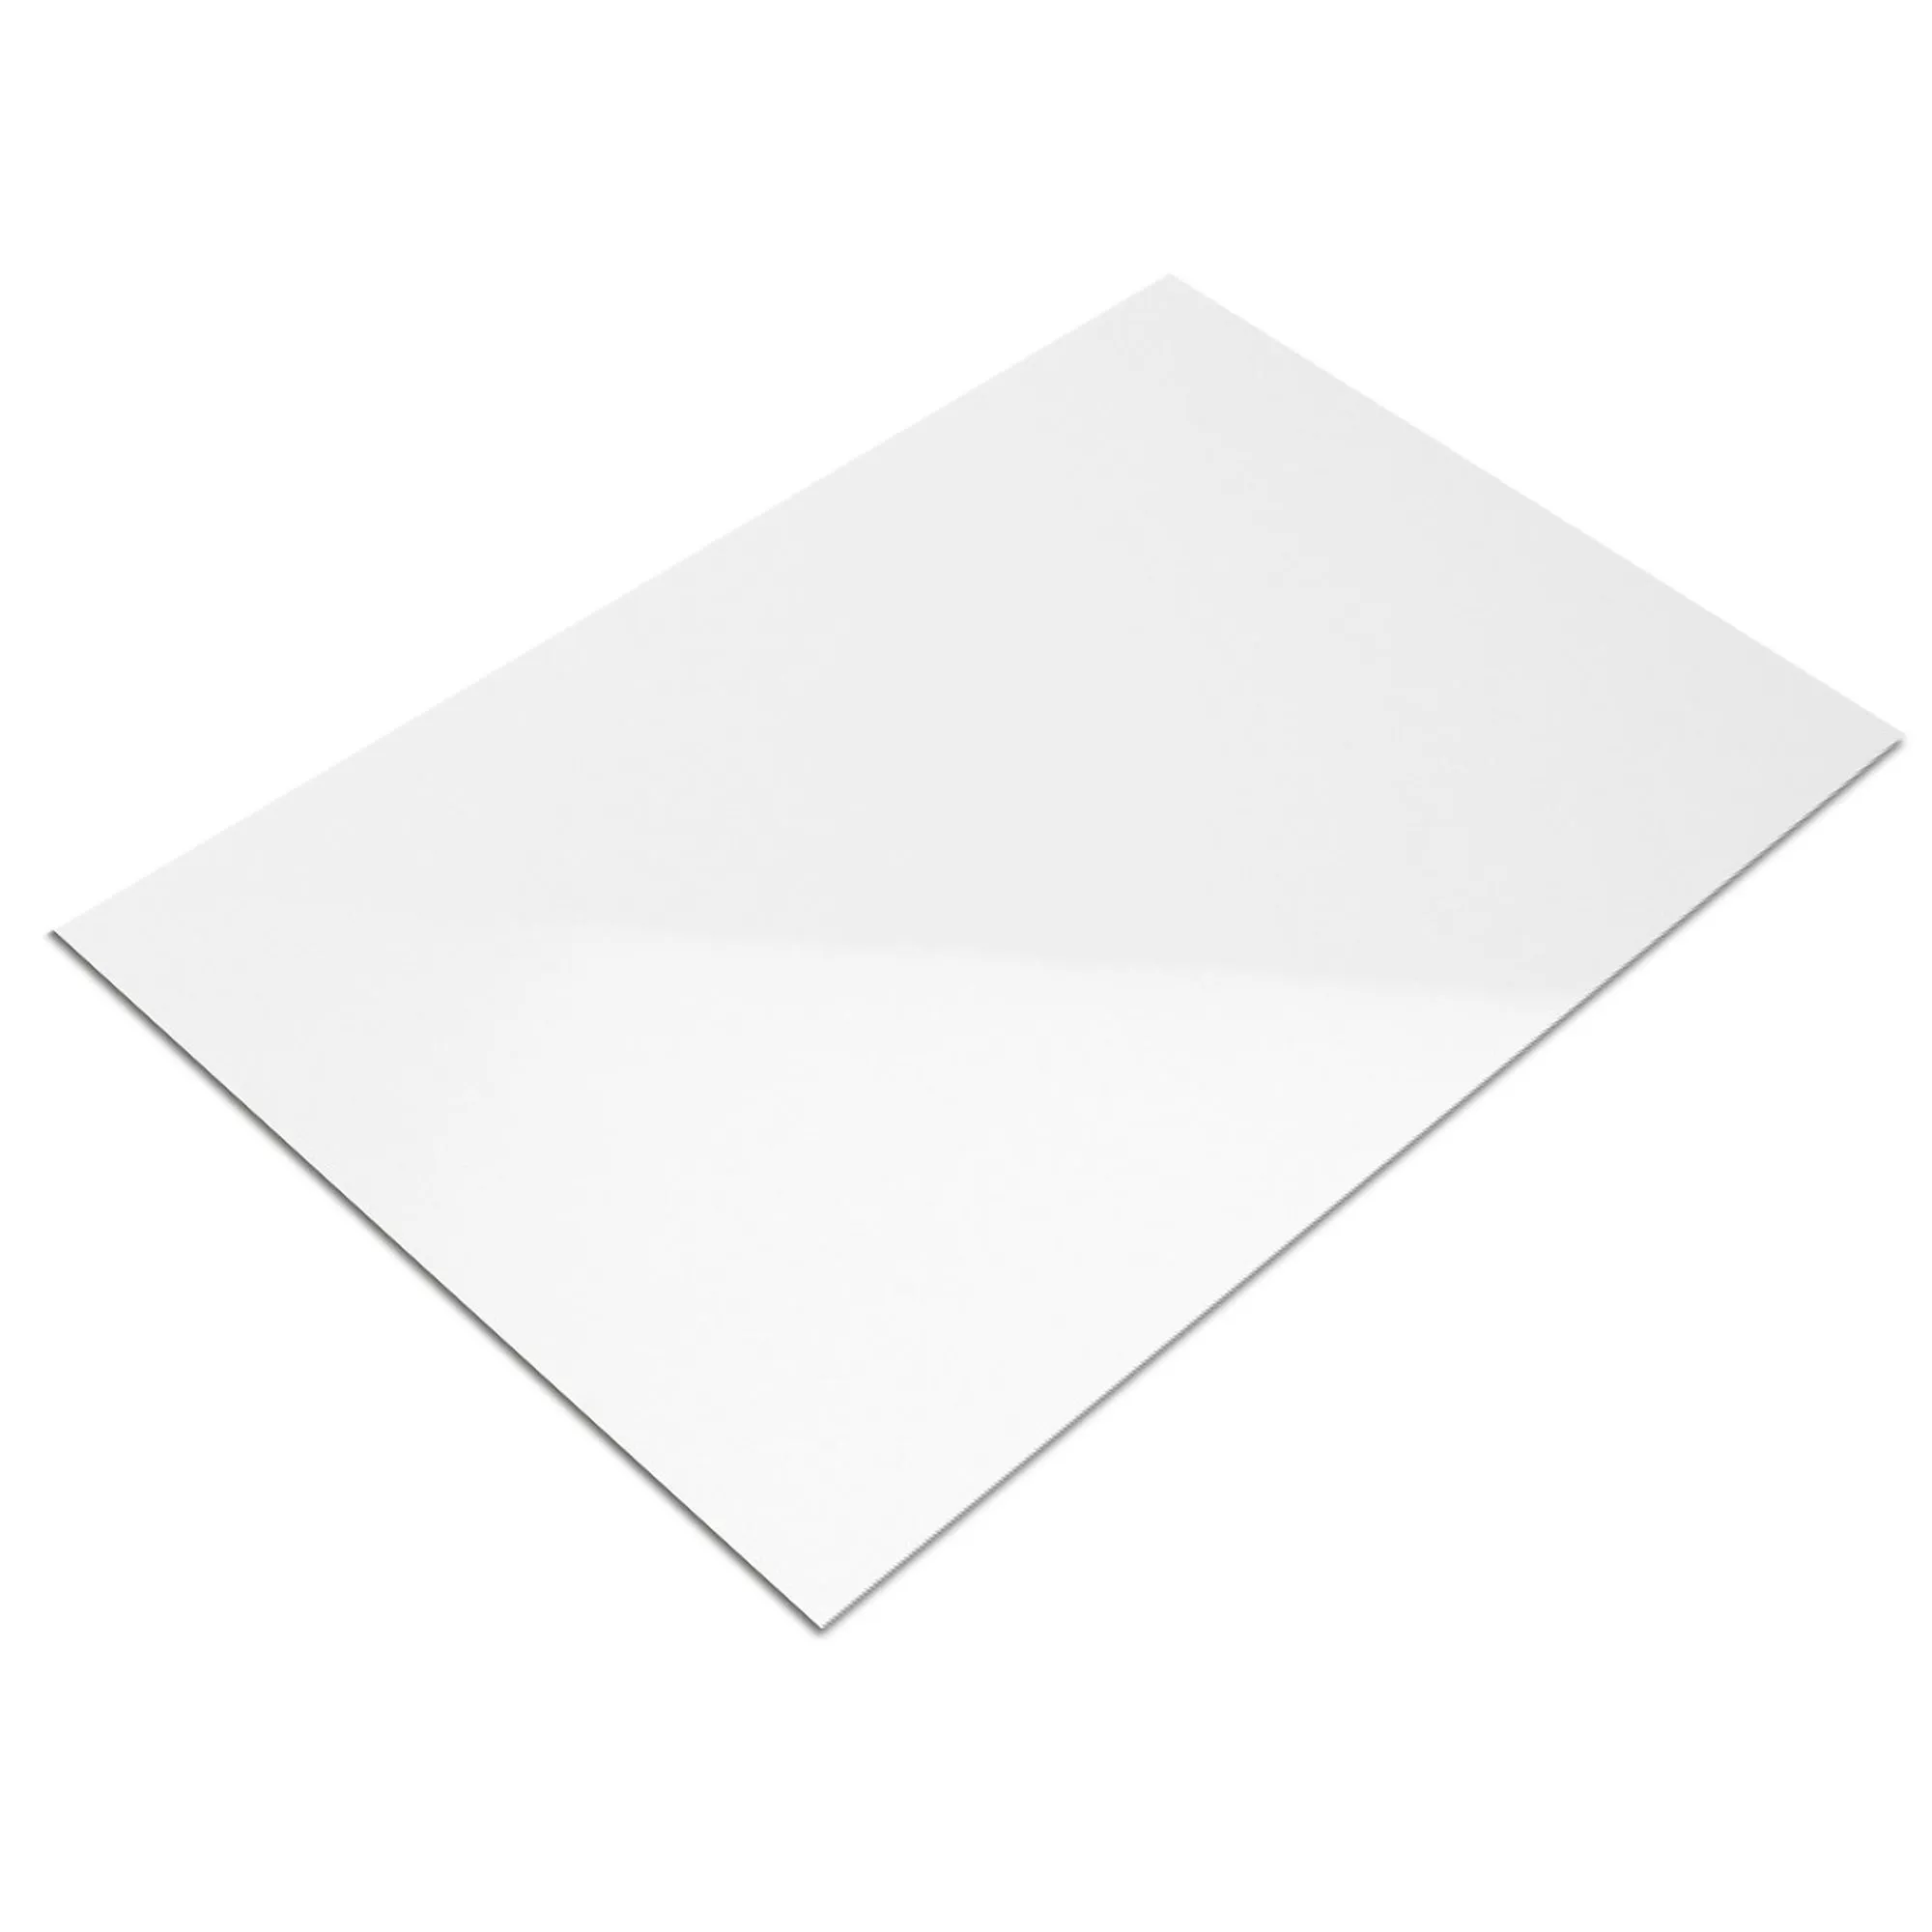 Muestra Revestimiento Fenway Blanco Brillante 25x33cm